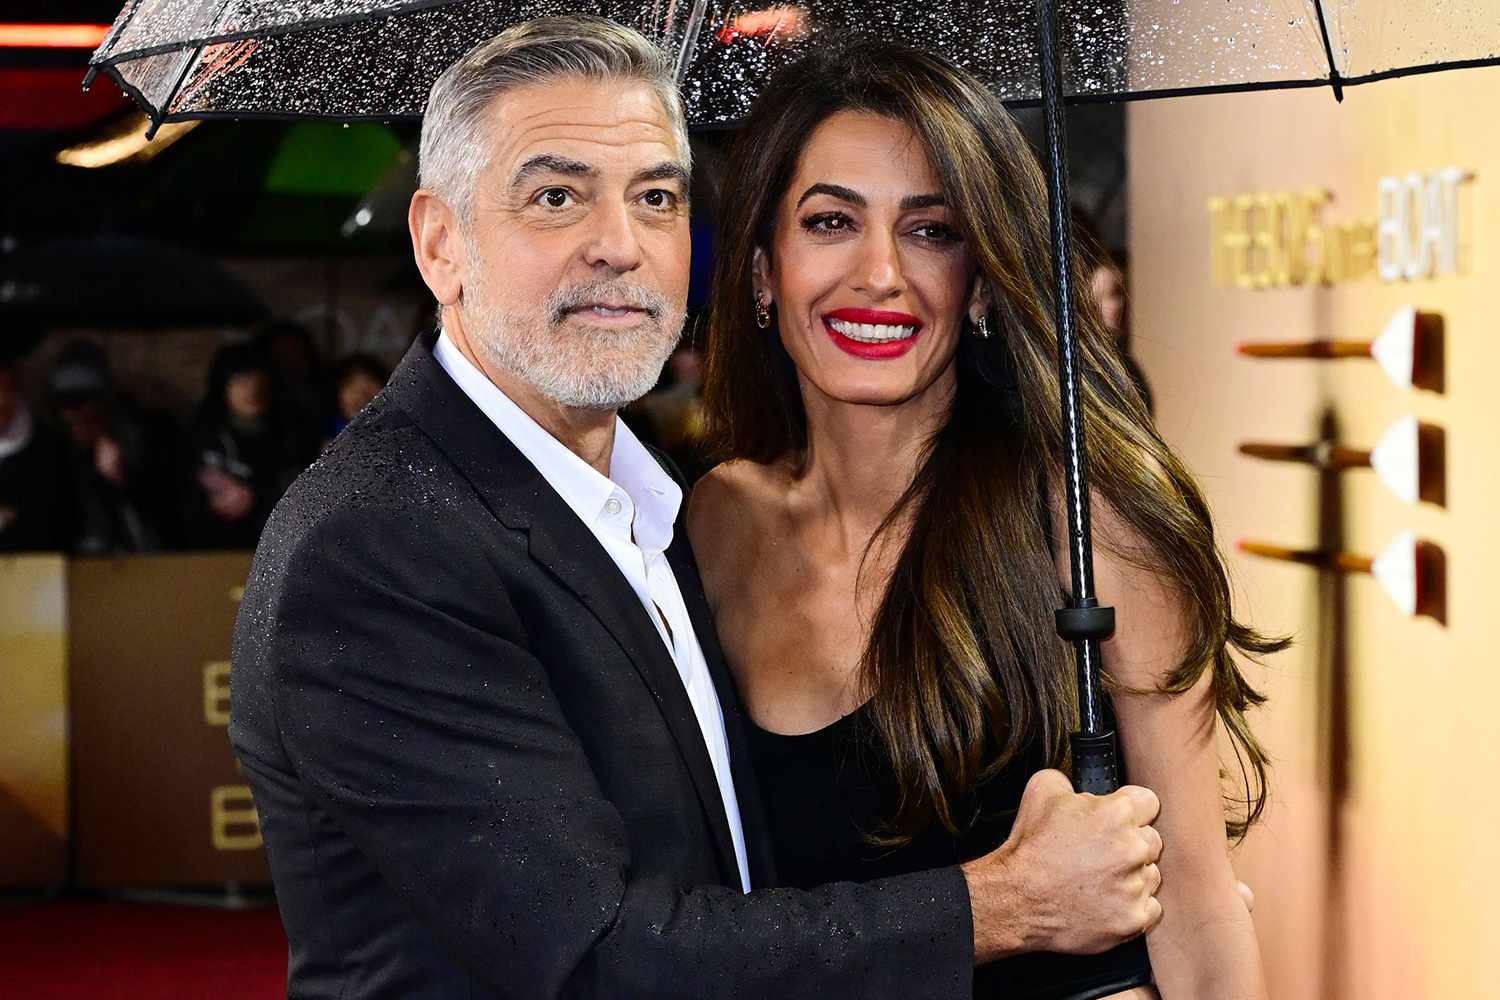 George Clooney: Η τρυφερή κίνηση προς την Amal στο κόκκινο χαλί